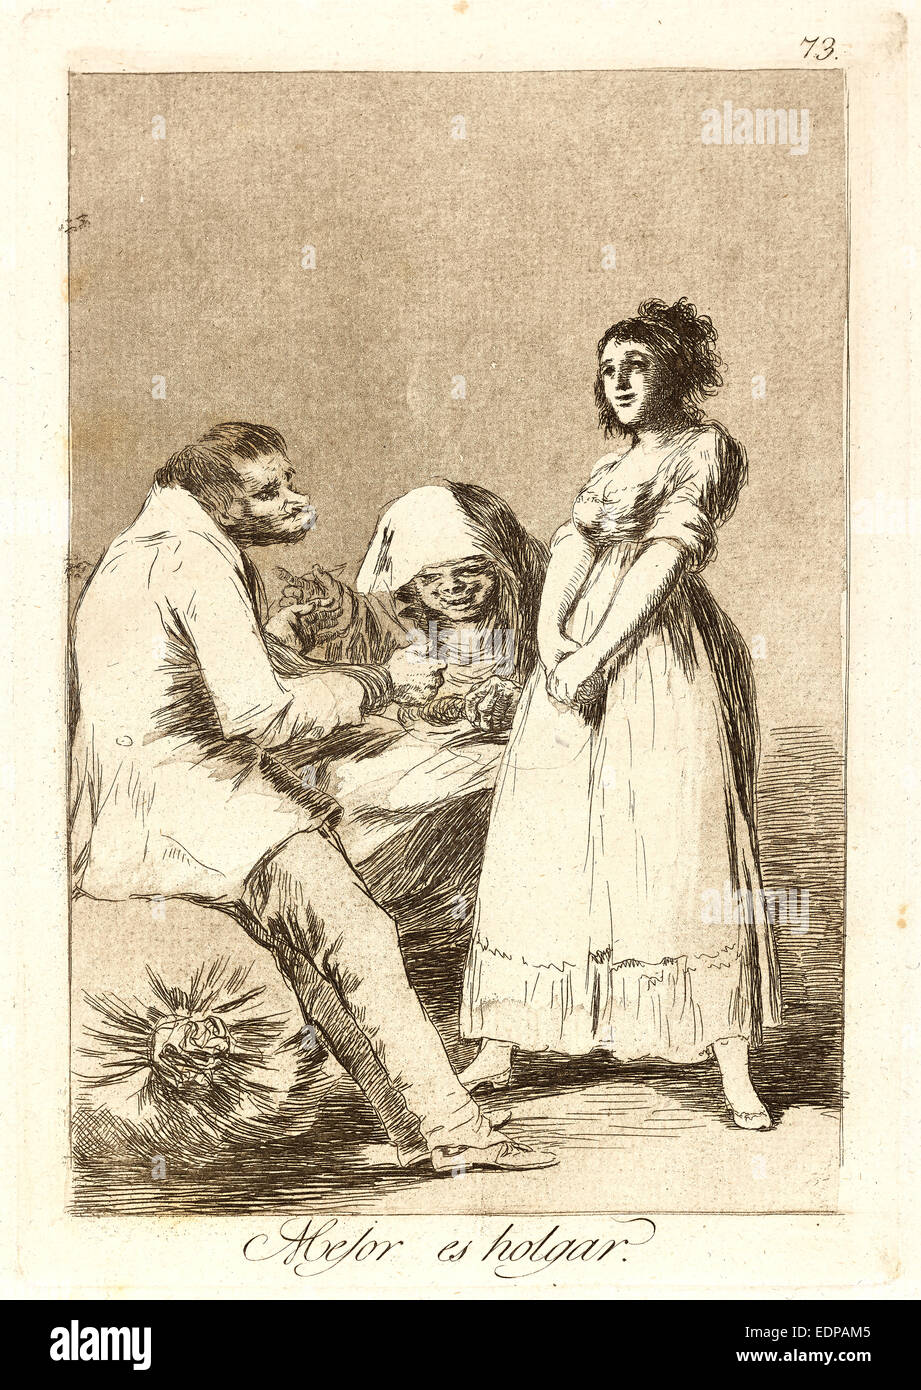 Francisco de Goya (Español, 1746-1828). Mejor es holgar. (Es mejor ser perezosos.), 1796-1797. A partir de Los Caprichos, no. 73 Foto de stock